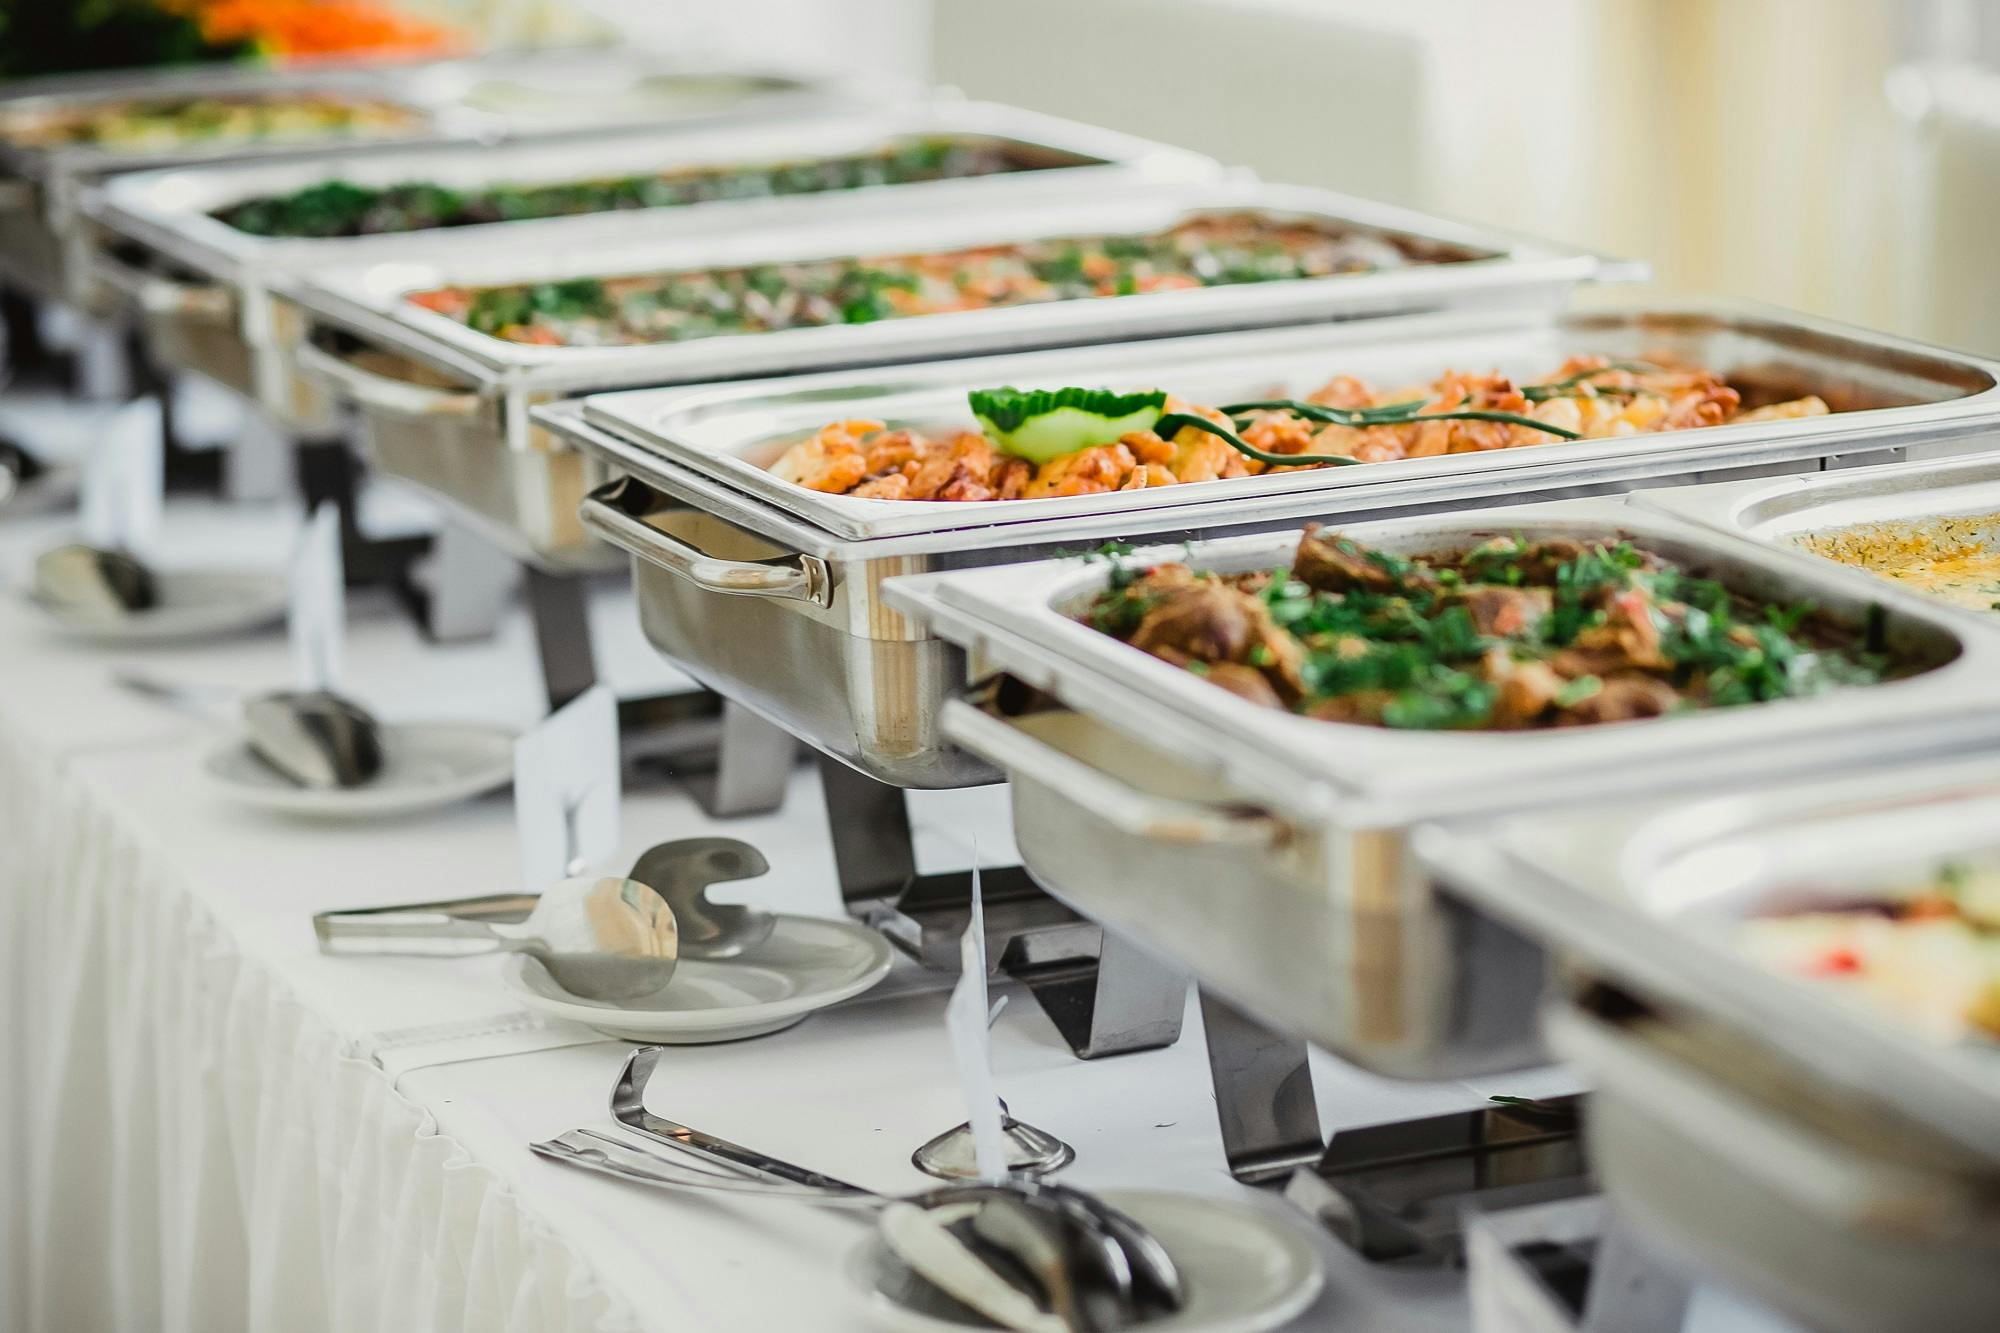 Buffet mit Chafing Dishes voller Speisen für ein Catering-Event.